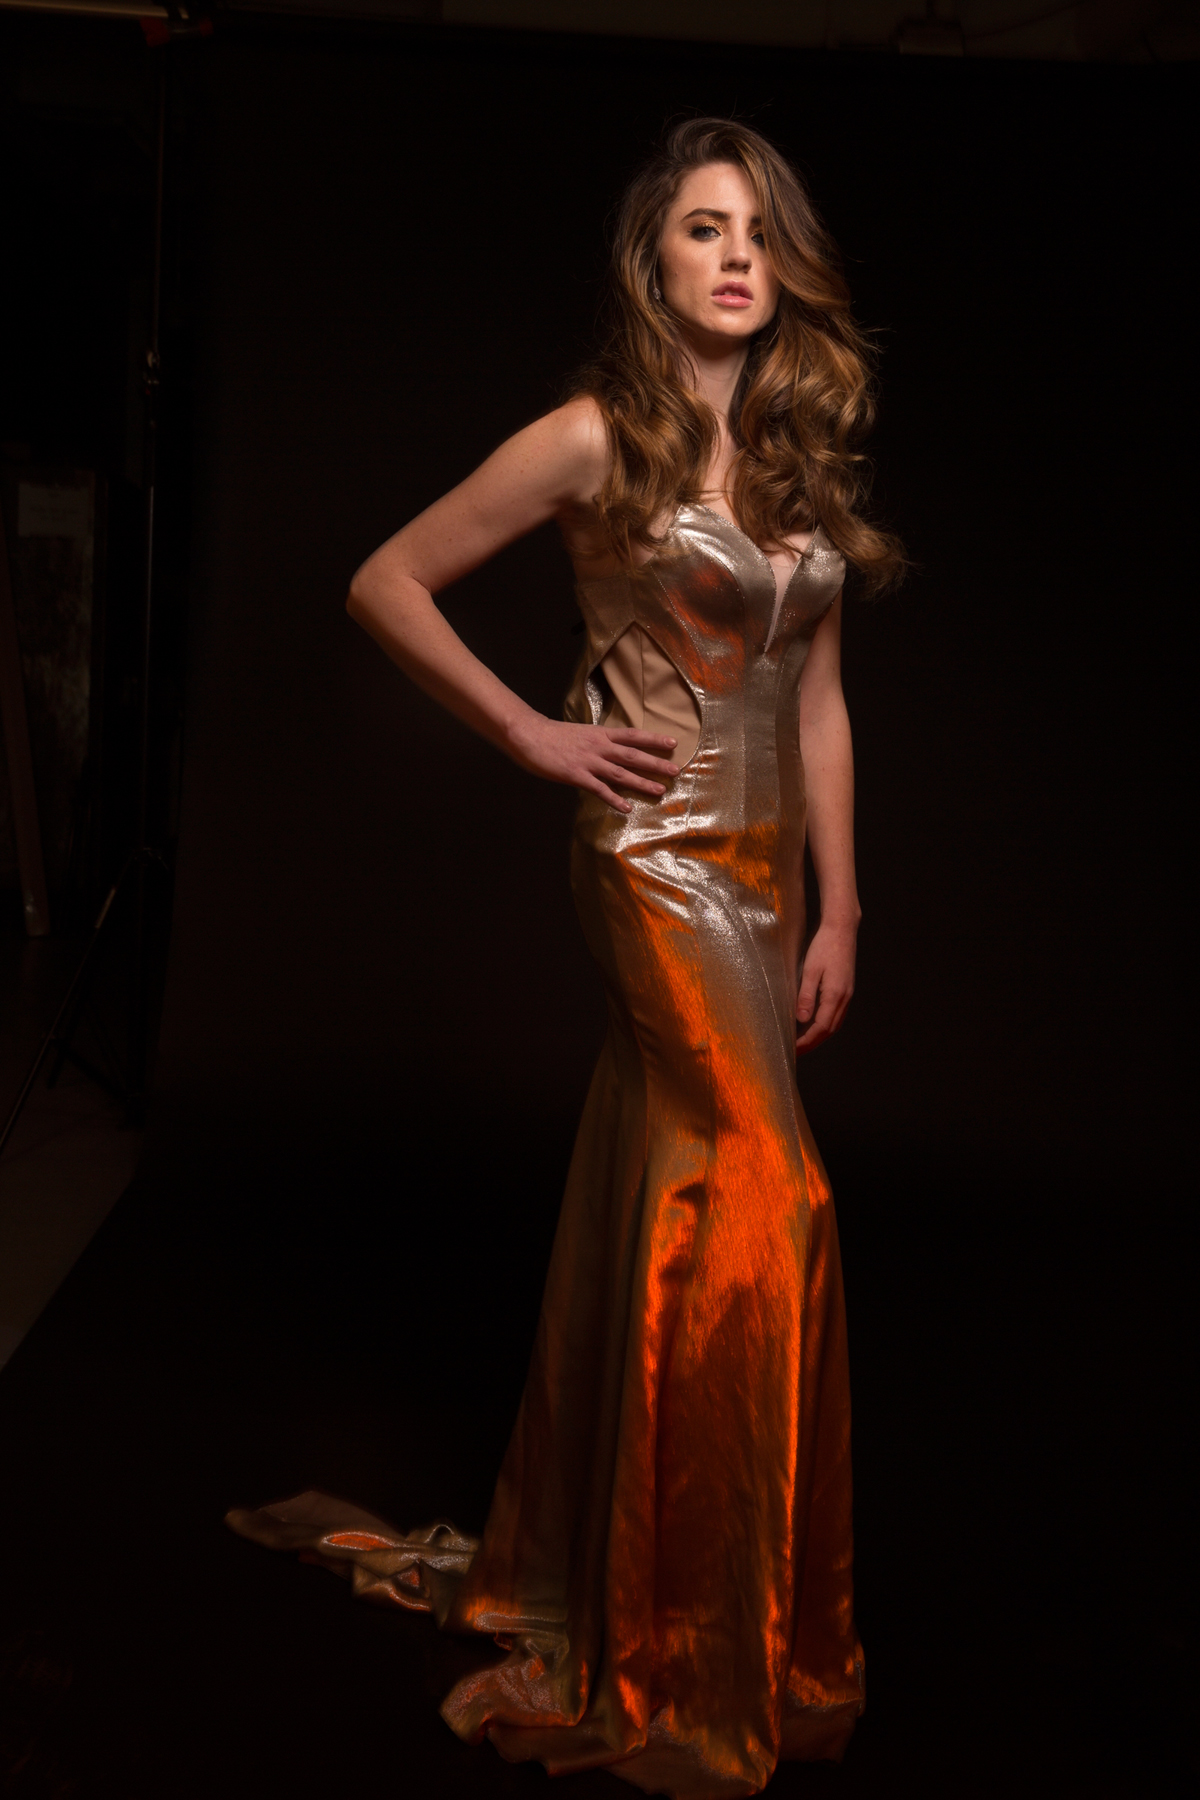 Lindsay Adler Dress On Fire Tutorial